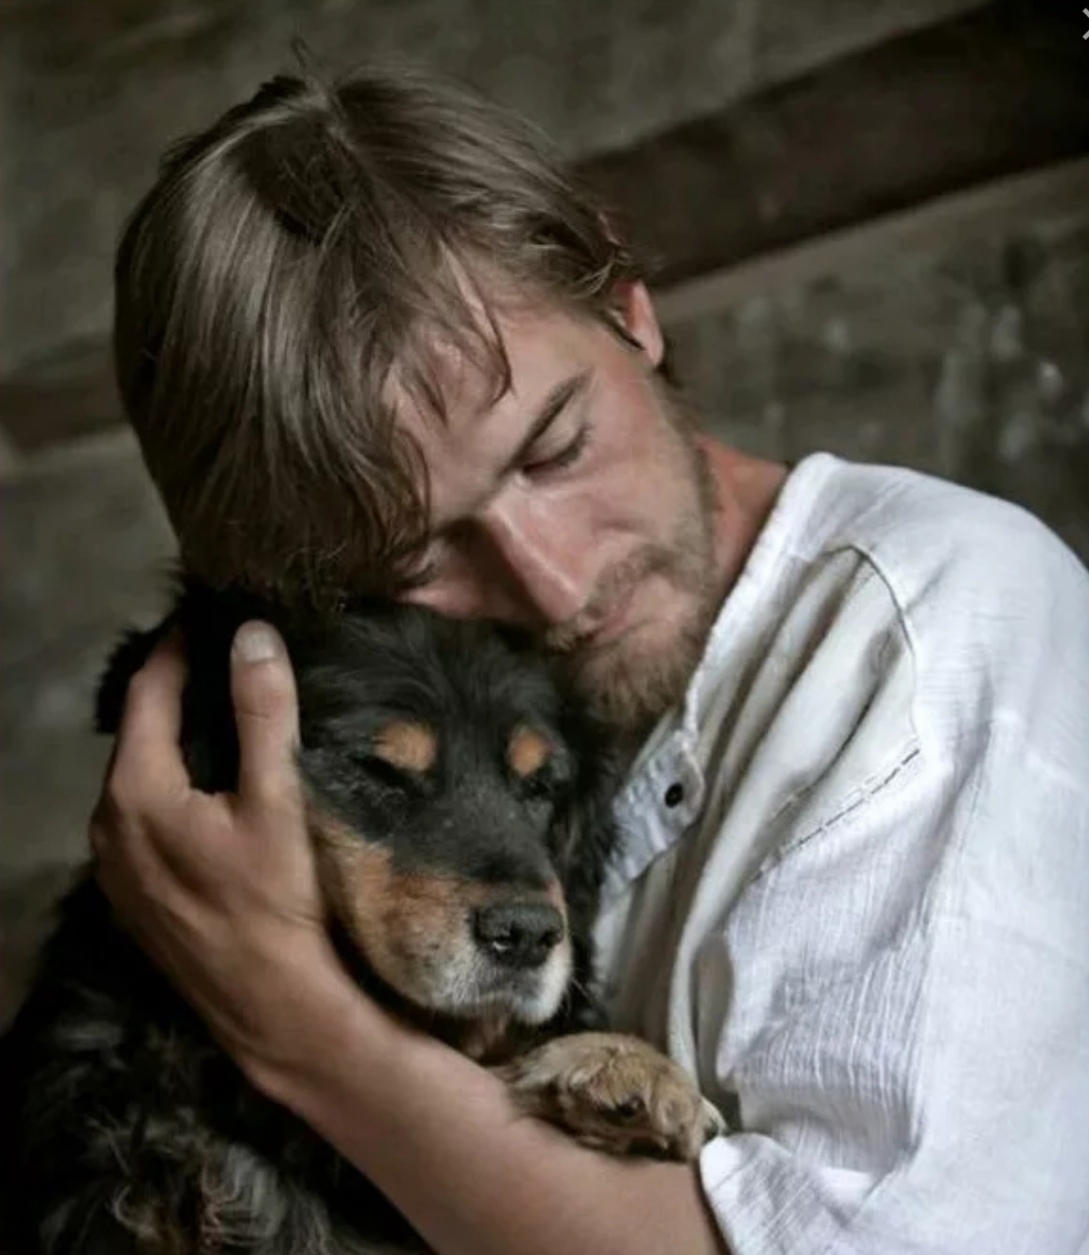 Доброта 74. Любовь к животным. Мужчина обнимает собаку. Собака друг человека. Милосердие к животным.